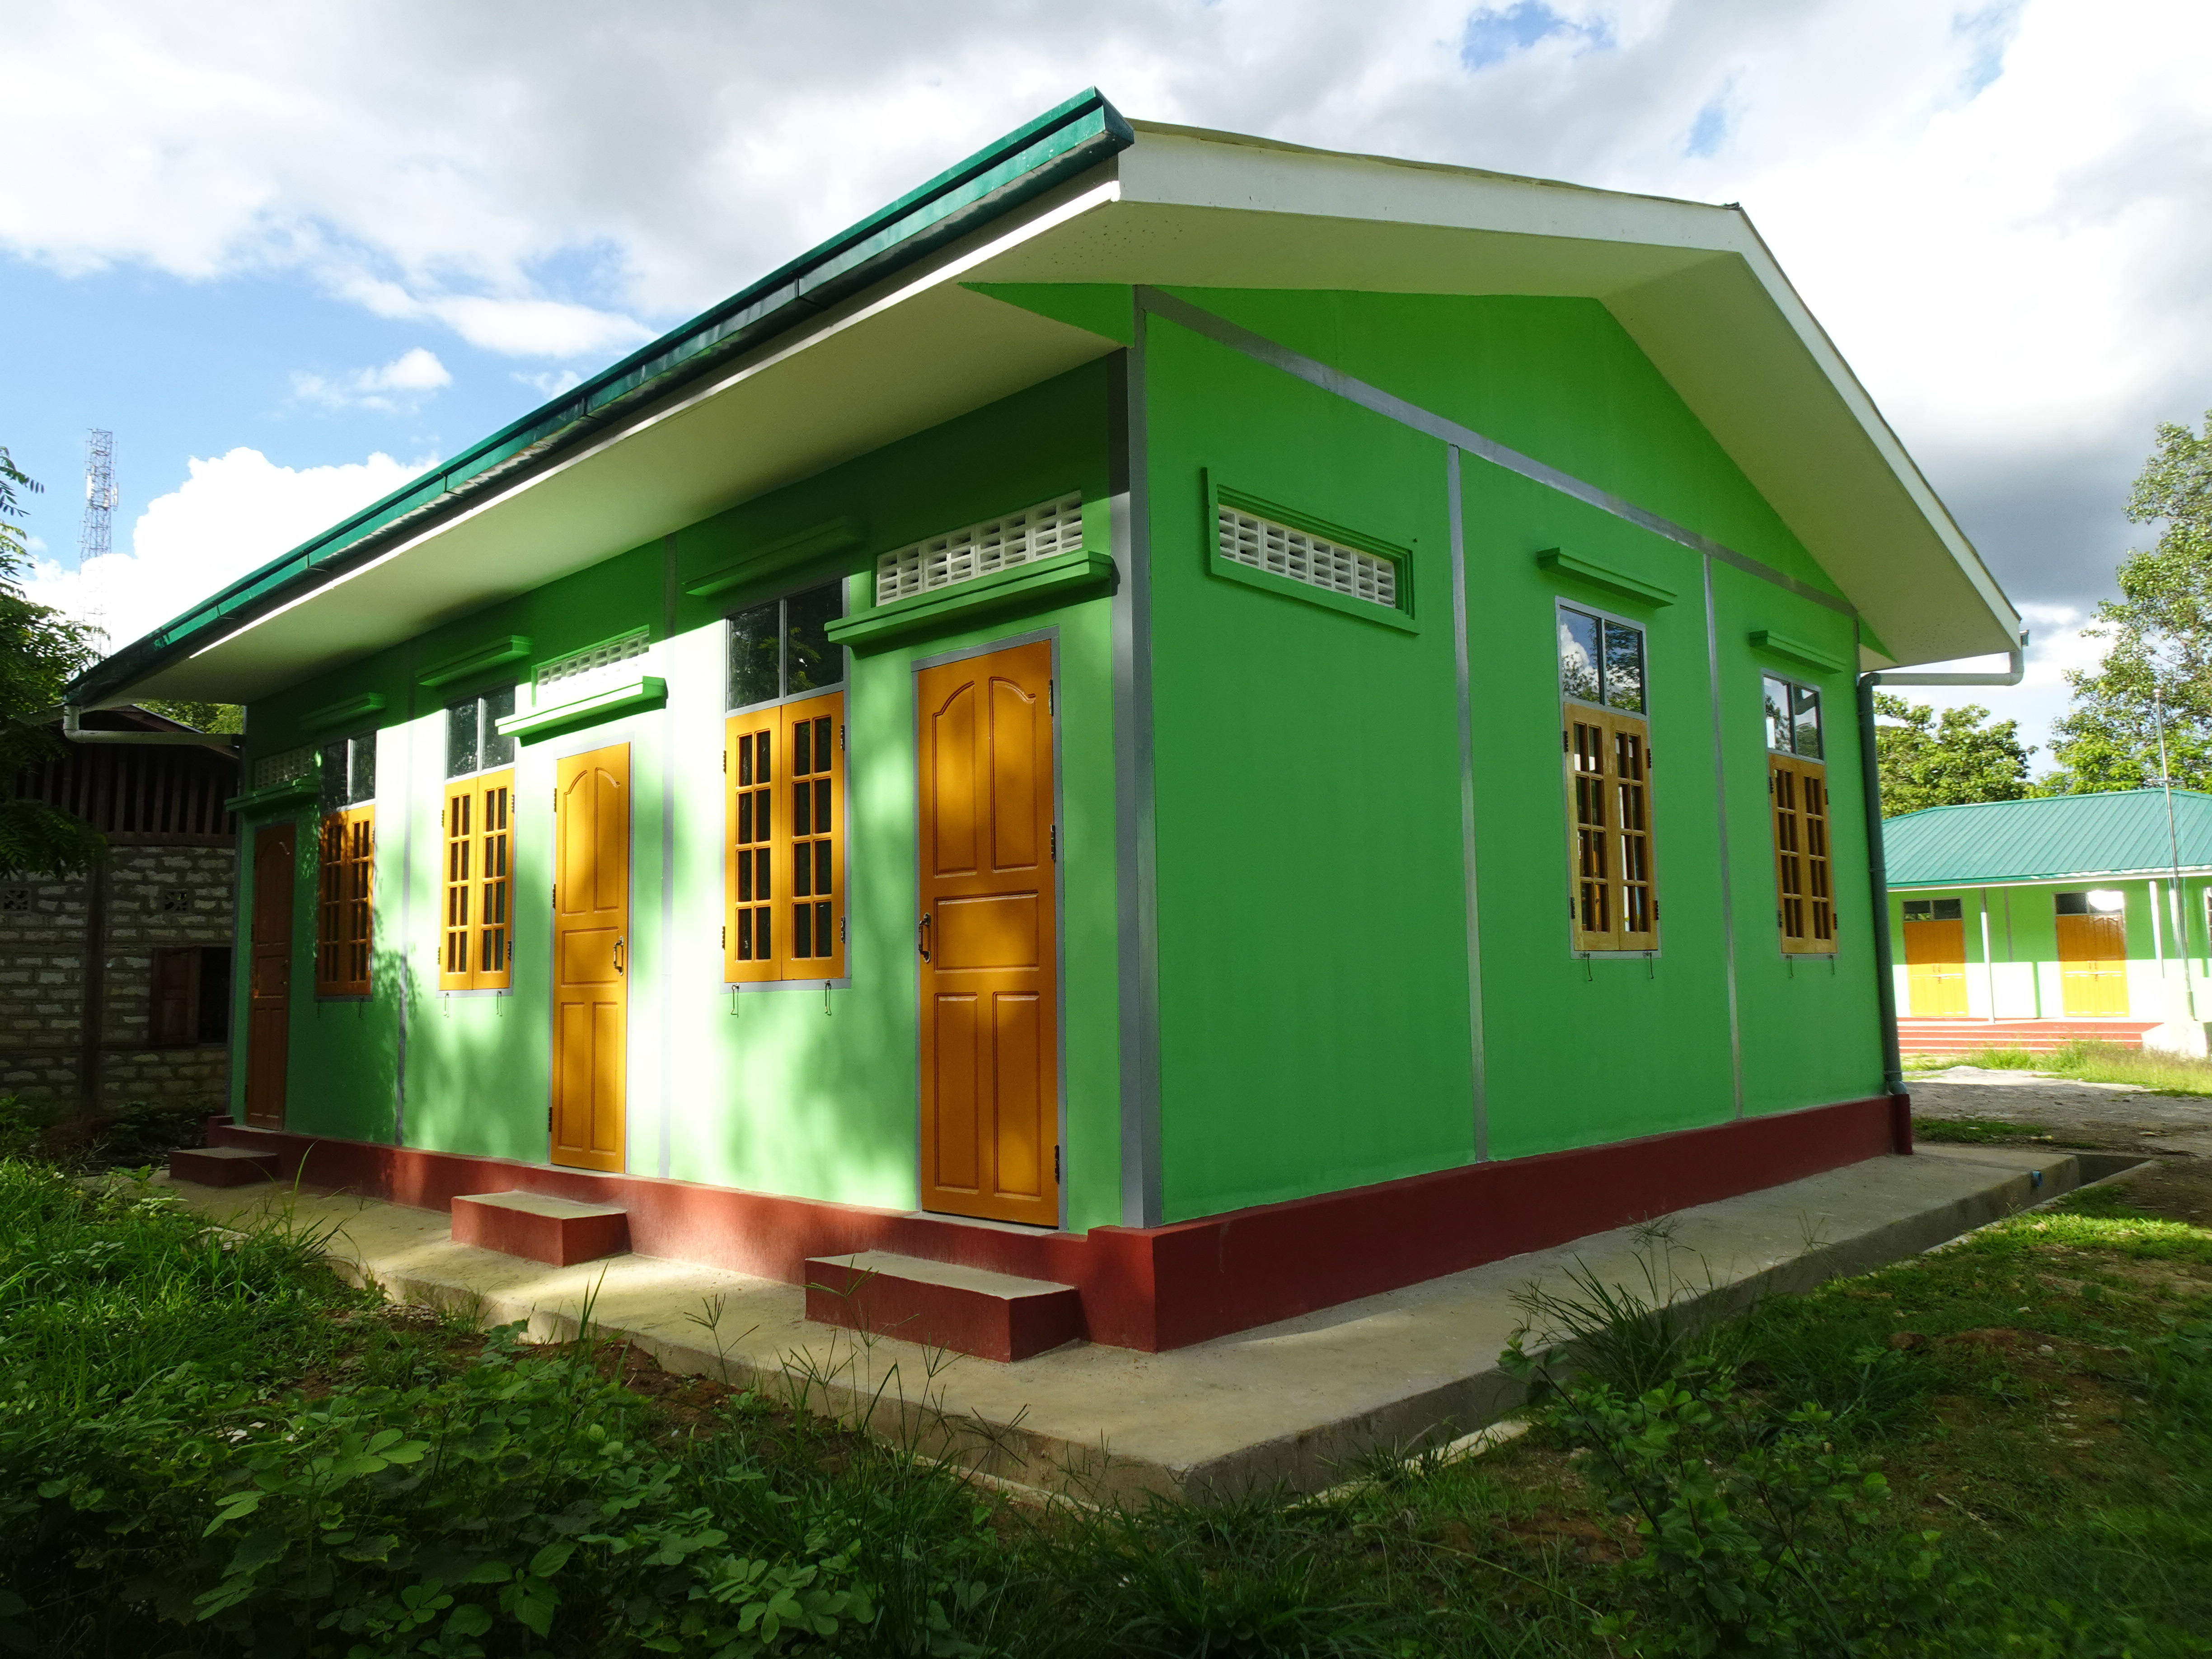 Stable school building in Myanmar 